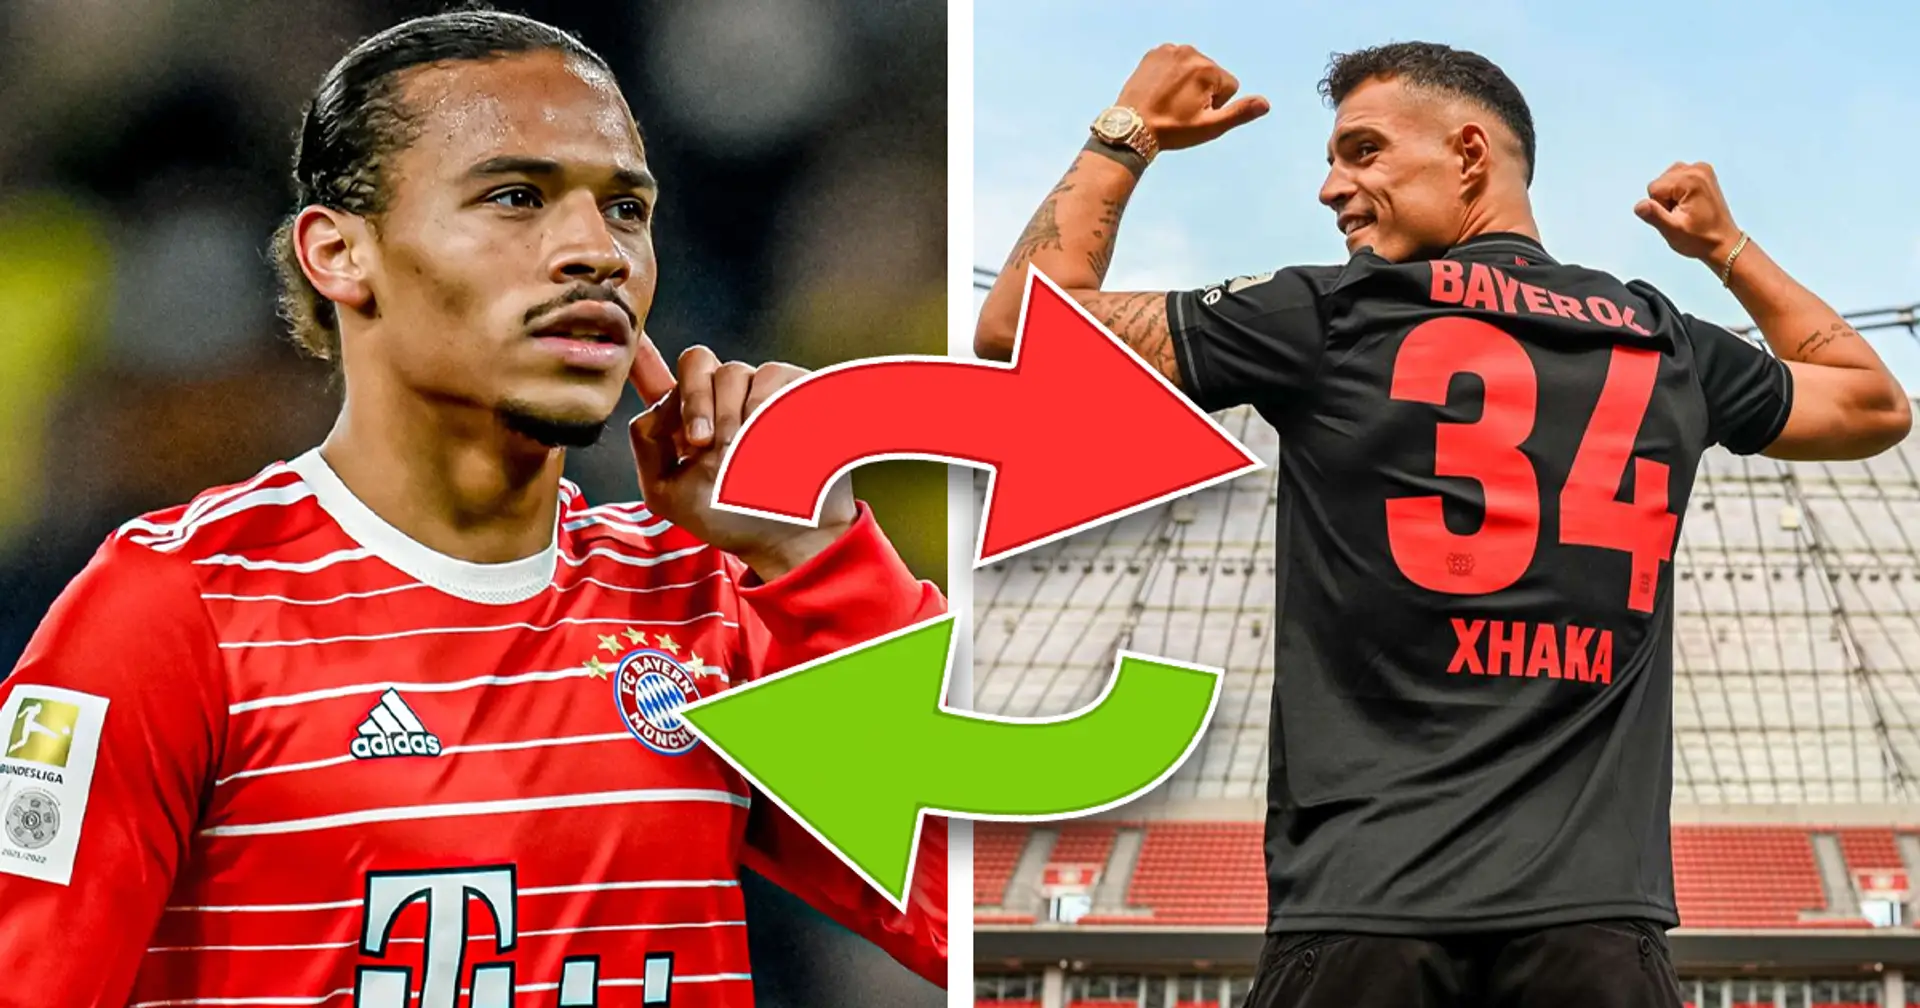 Sane-Zukunft ungewiss, Xhaka wechselt zu Leverkusen: Wichtigste Transfer-News des Tages - bei Bayern und weltweit